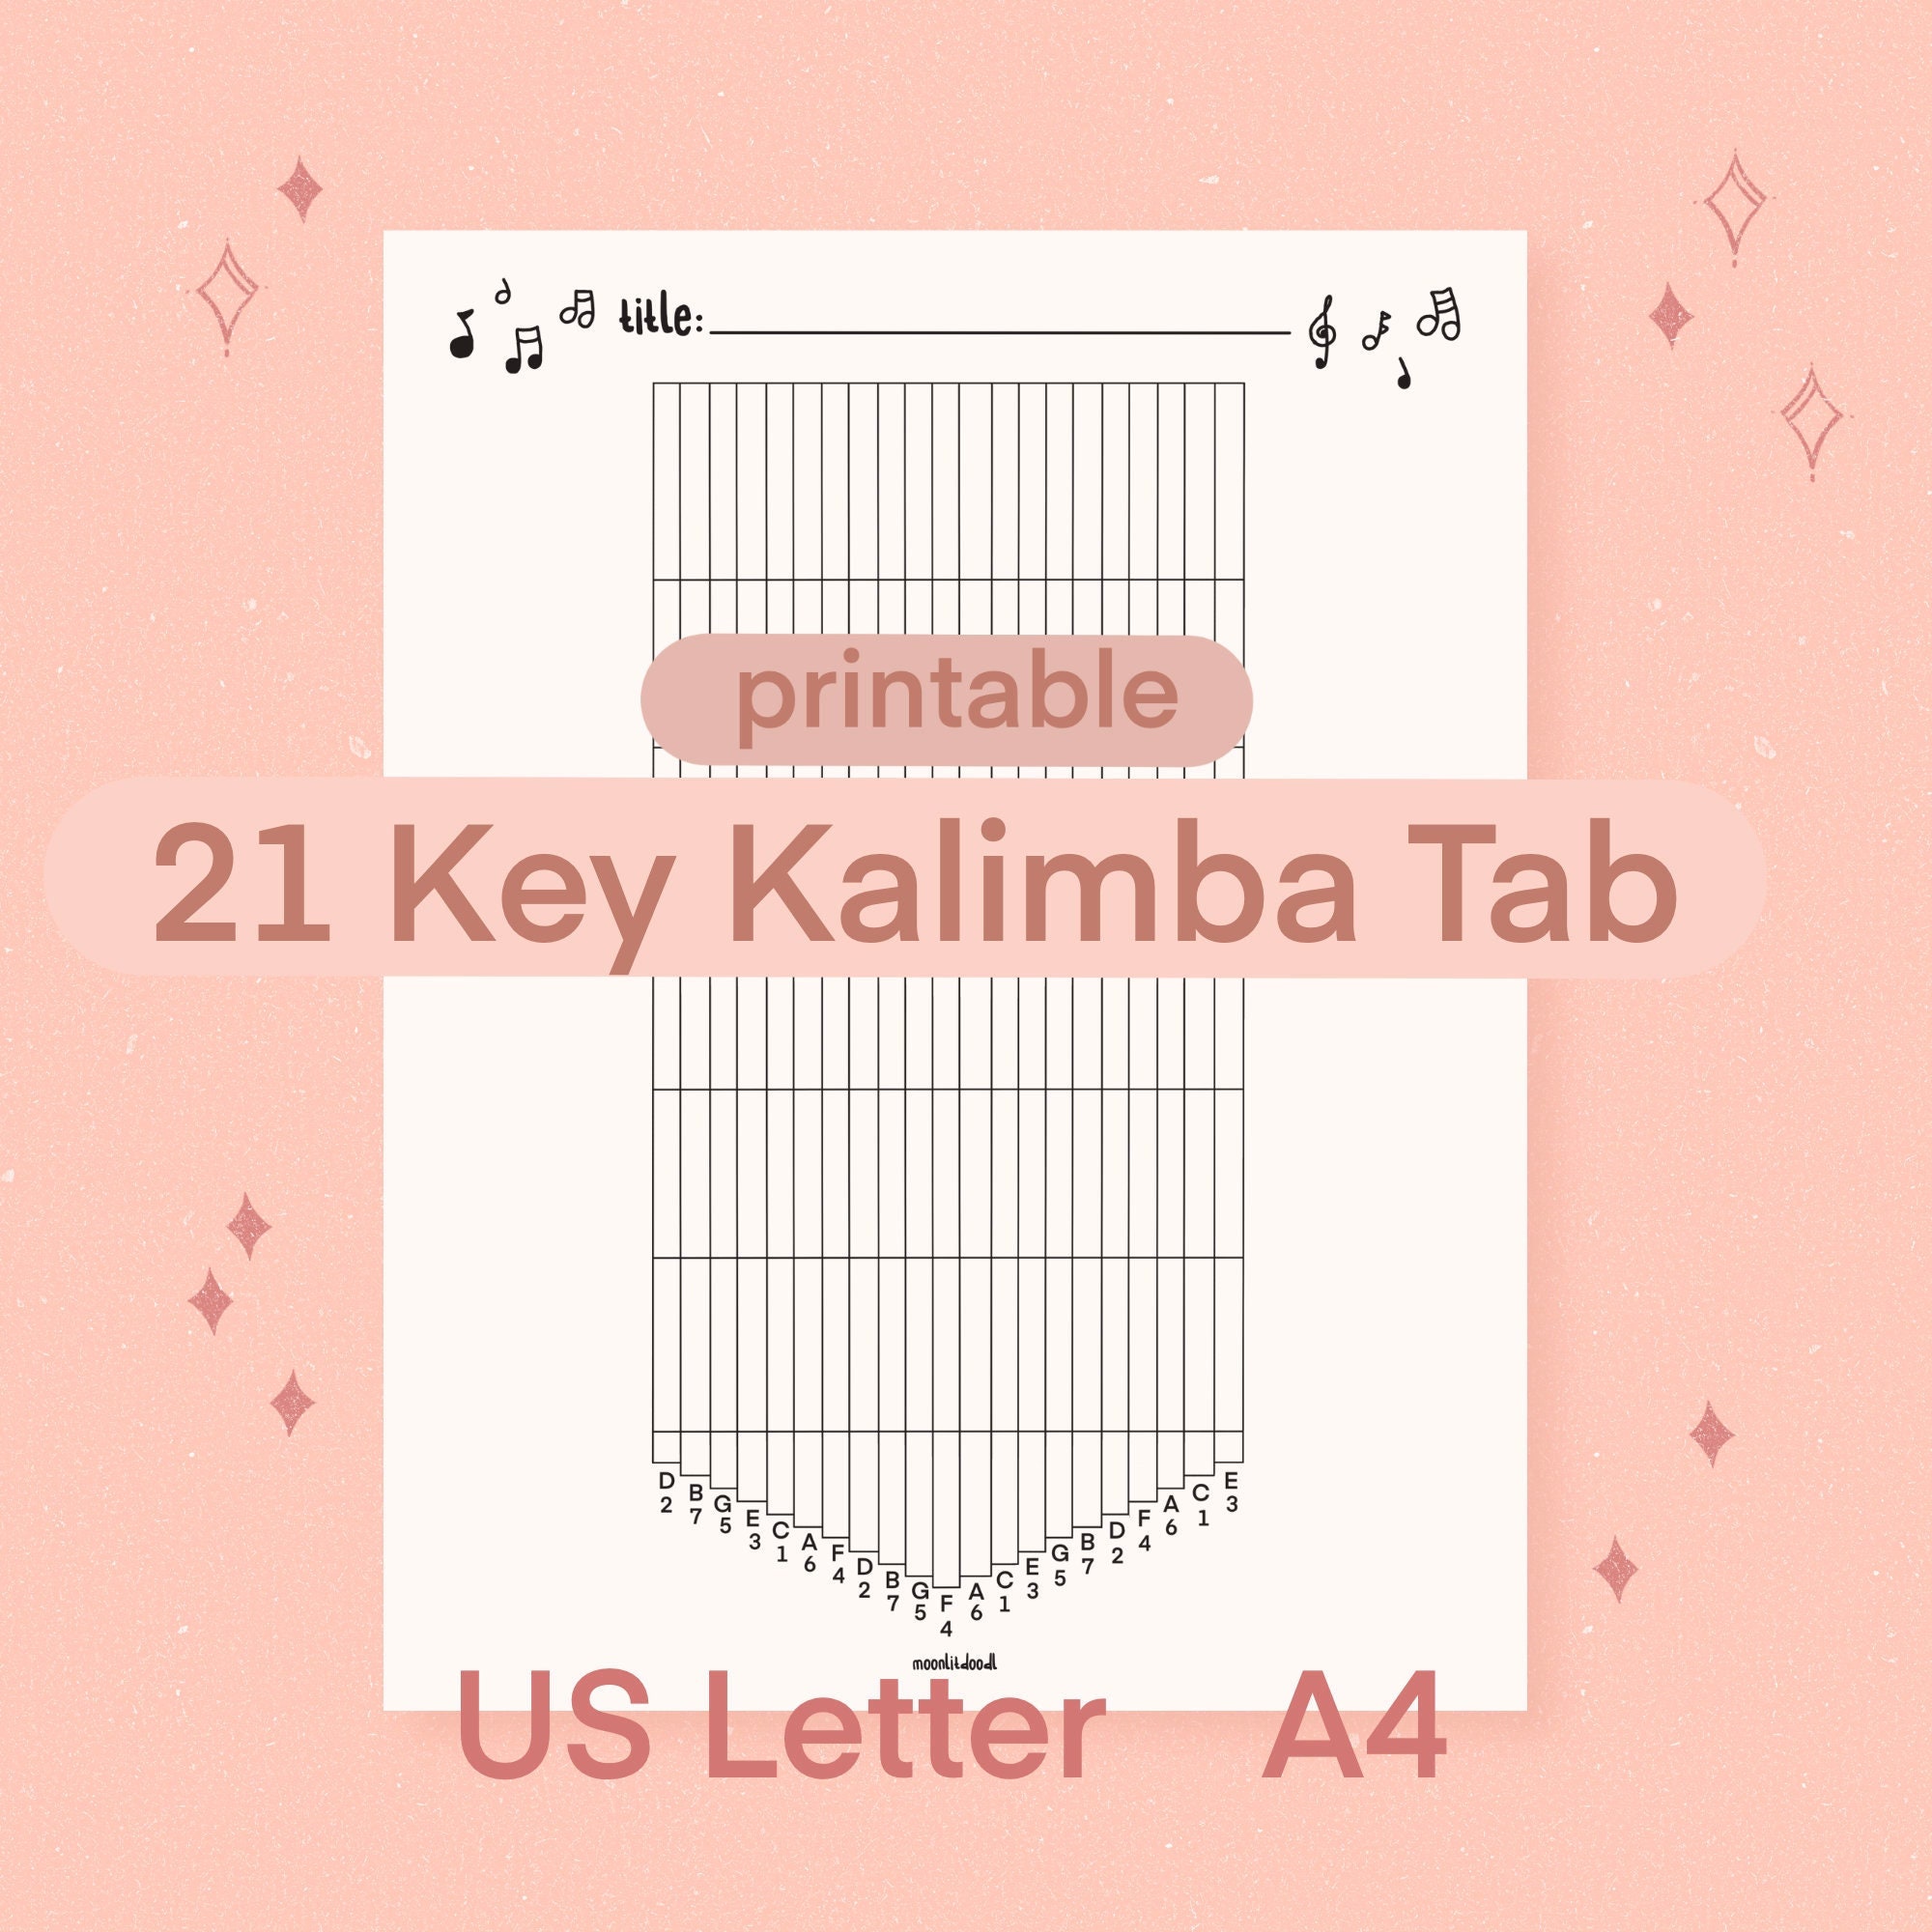 21 Kalimba Tab Sheet Music Printable - Etsy